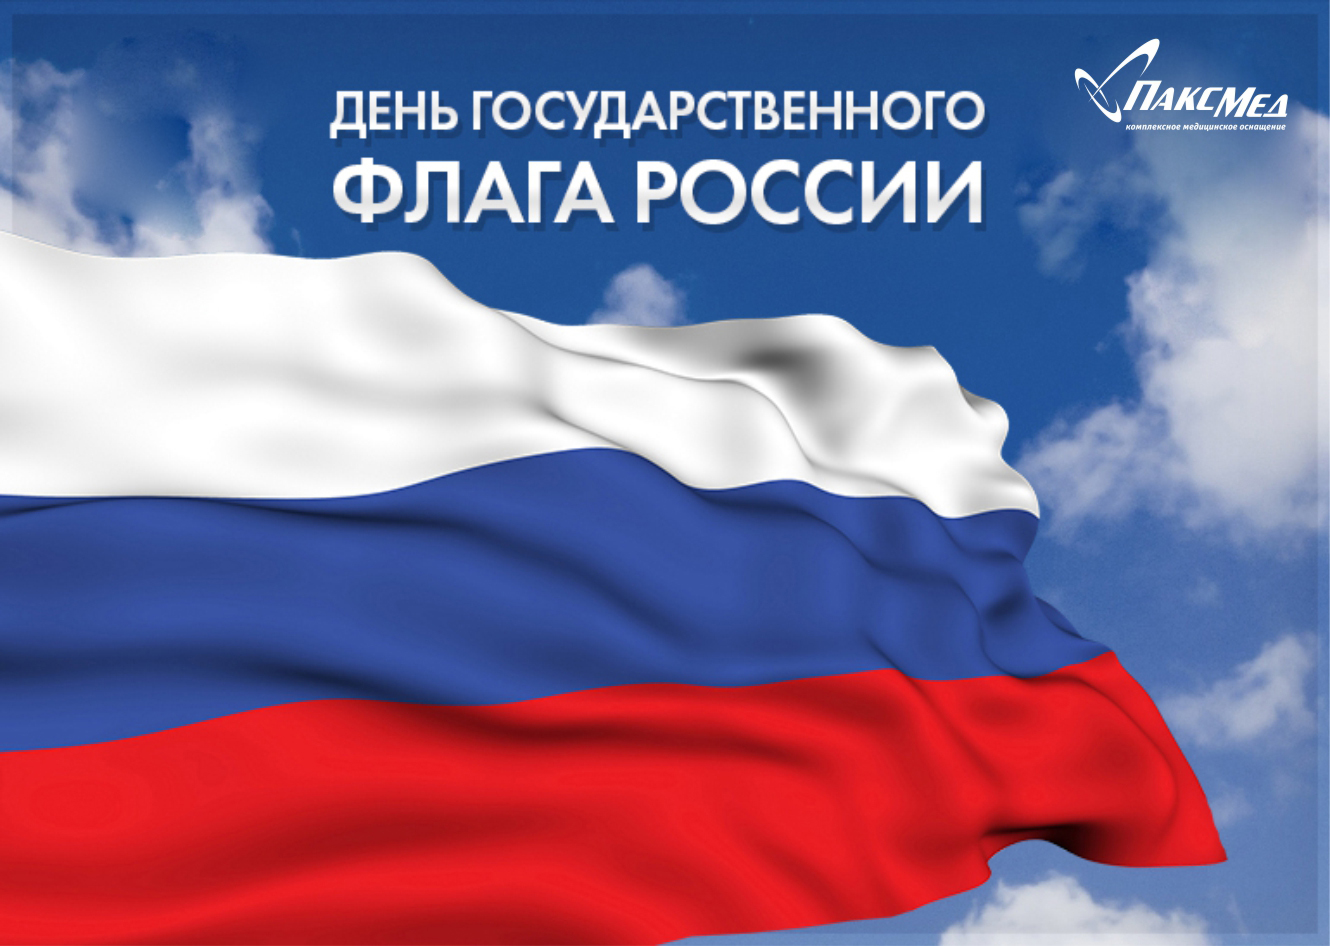 С Днем Государственного Флага России!